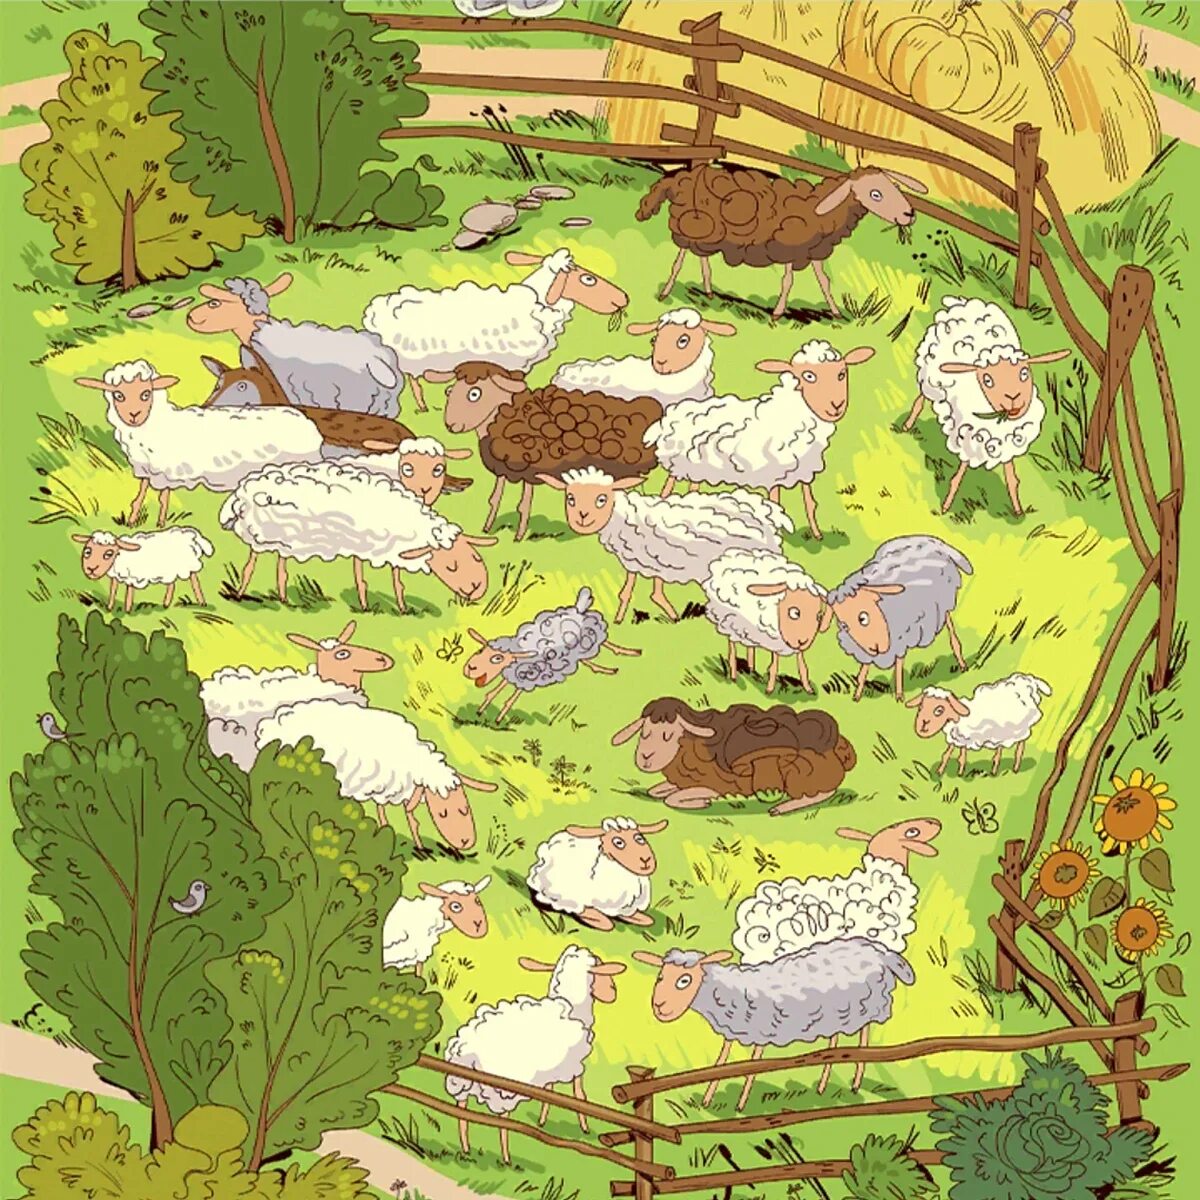 Найди всех животных на картинке 165 уровень. Найди Волков среди овец. Найди Волков. Найди волка на картинке среди овец. Найди овцу на картинке.